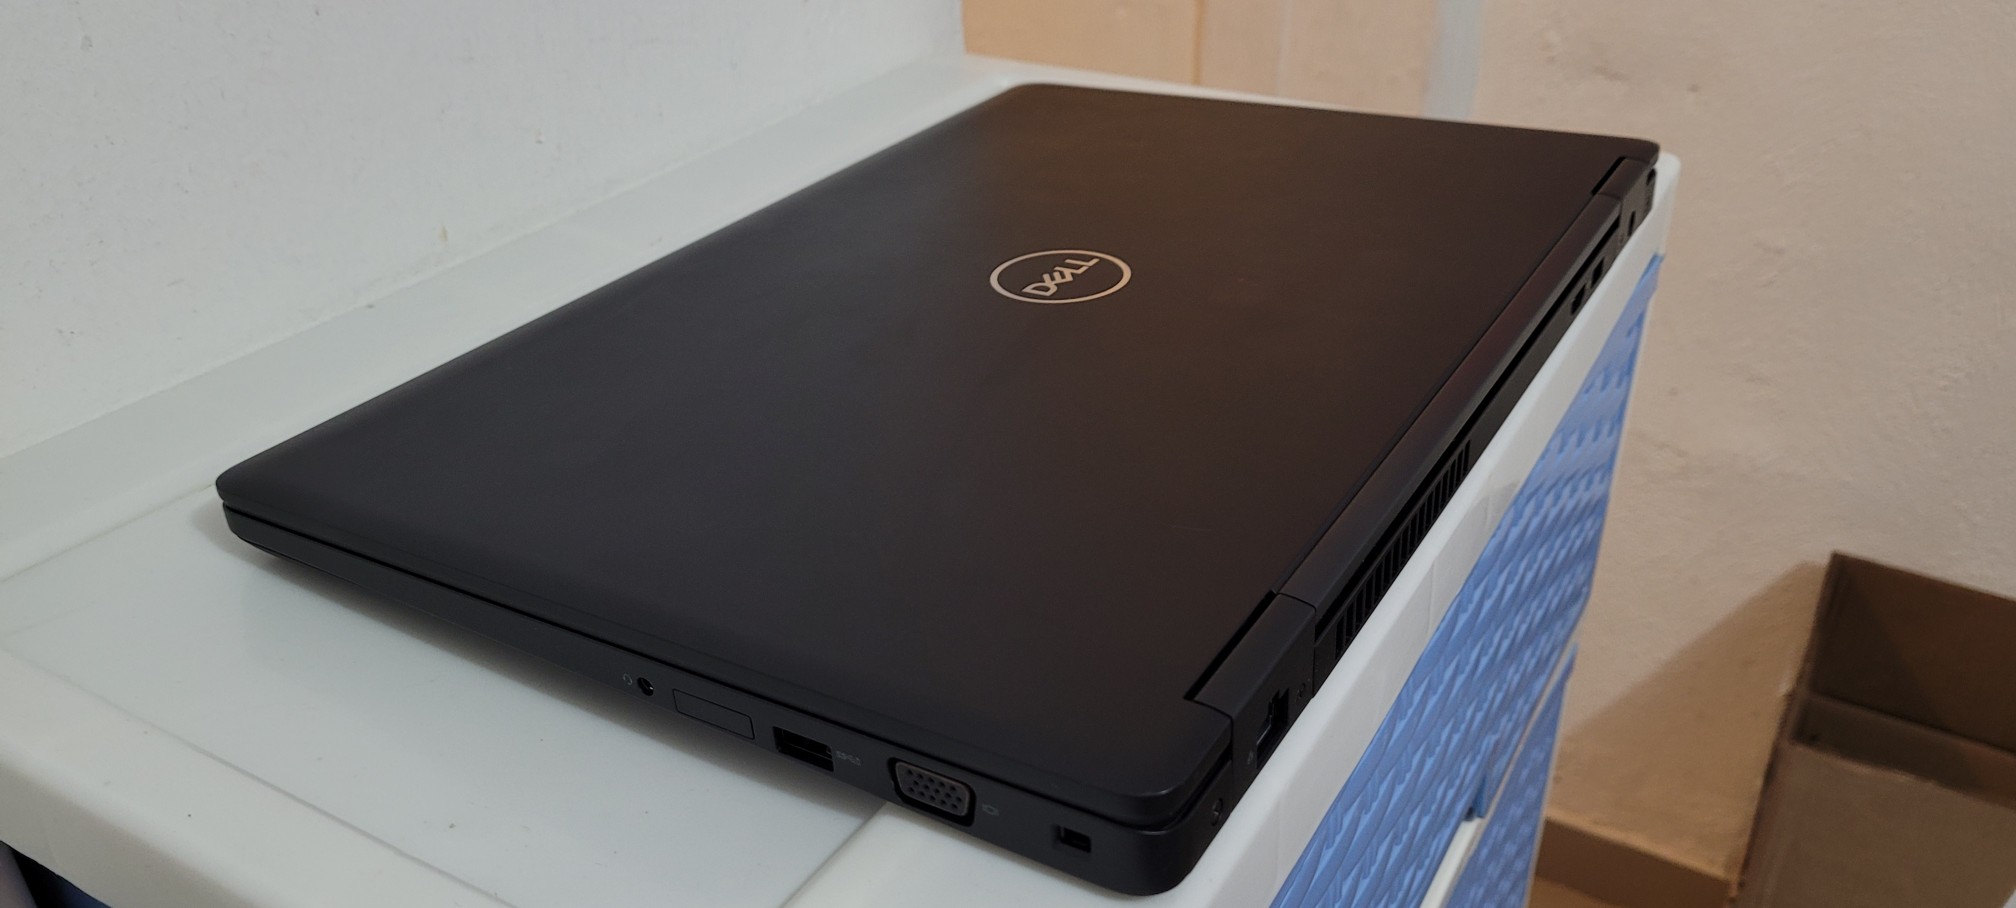 computadoras y laptops - Dell 5570 17 Pulg Core i7 6ta Gen Ram 16gb Disco 256gb Video intel Y Aty Radeon 2